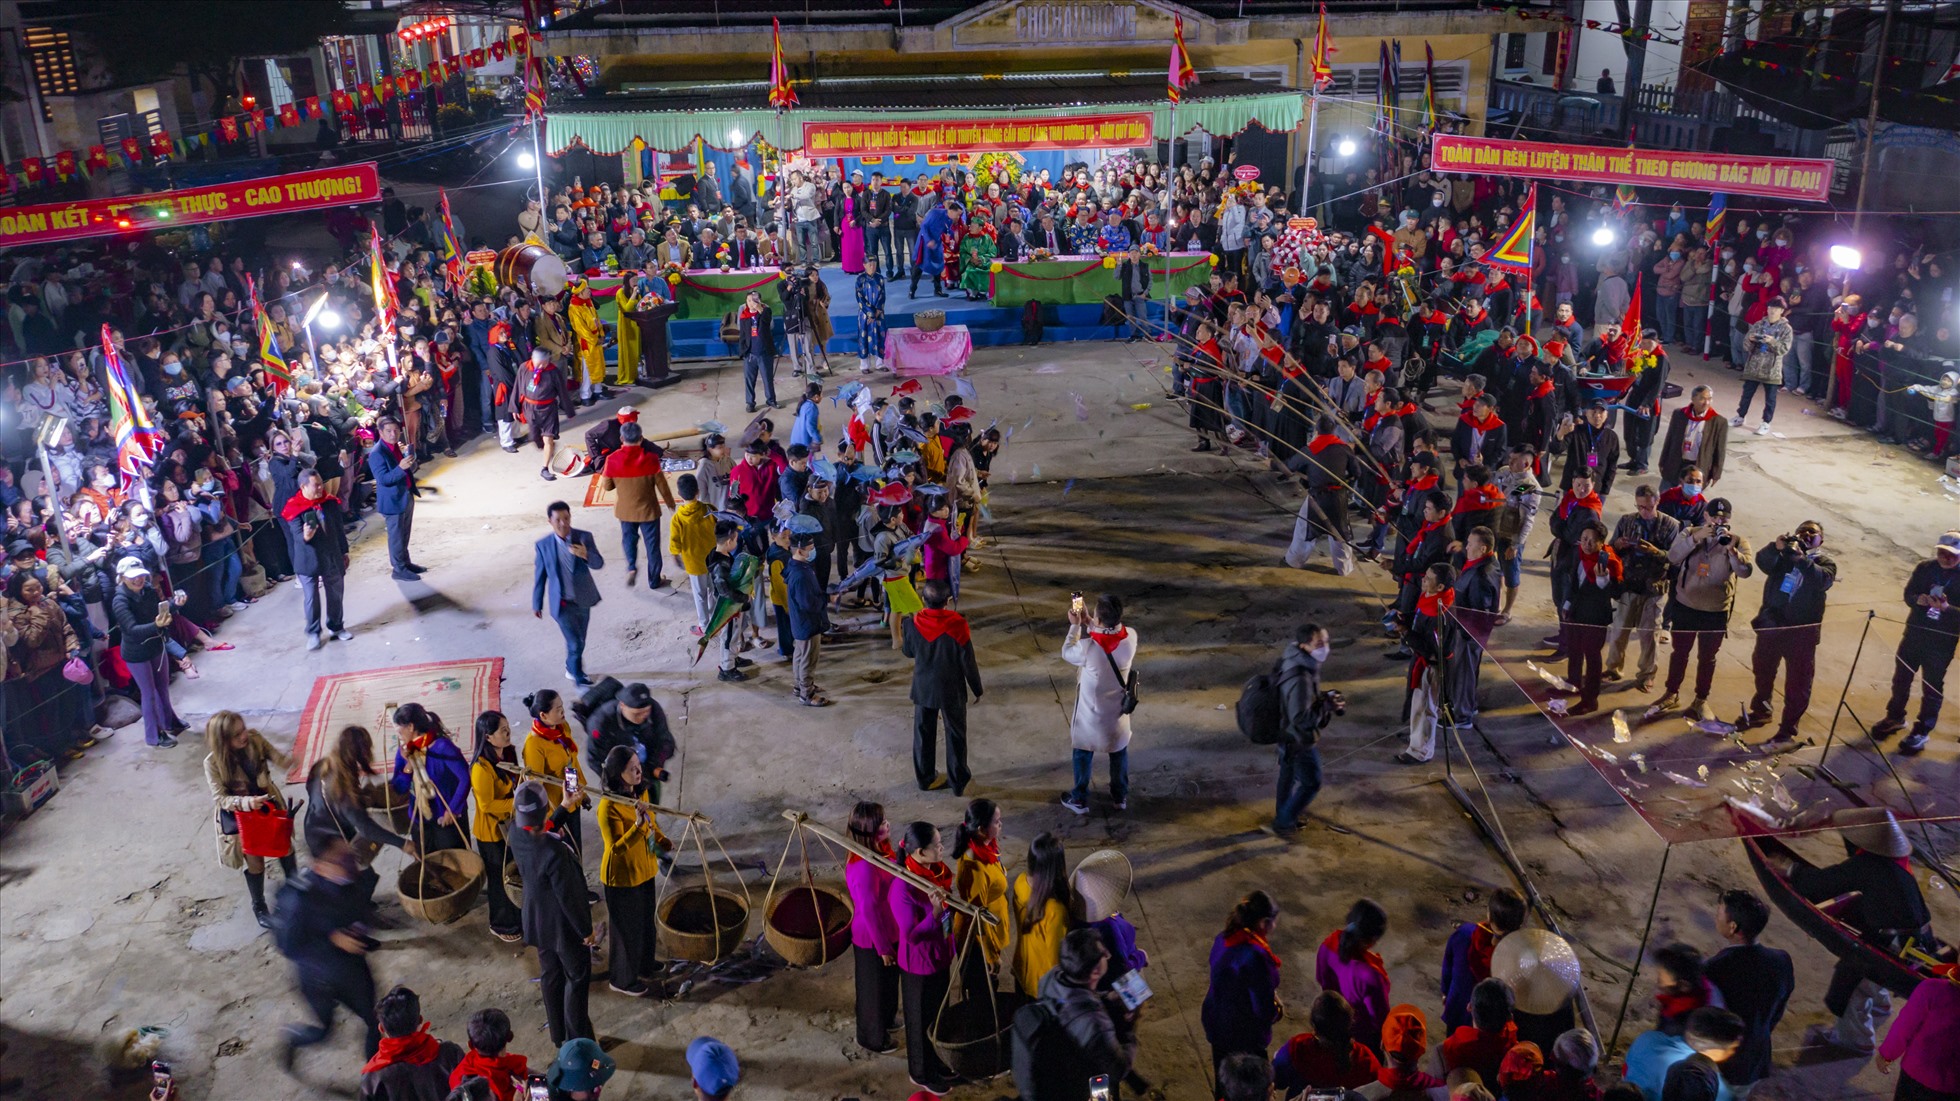 Theo phong tục “tam niên đáo lệ” (ba năm một lần tổ chức hội lớn), lễ hội cầu ngư làng Thai Dương Hạ năm nay được diễn ra trong không khí vui nhộn, sôi động, bởi ba năm trước đó lễ hội truyền thống này không thể tổ chức do ảnh hưởng của dịch bệnh.